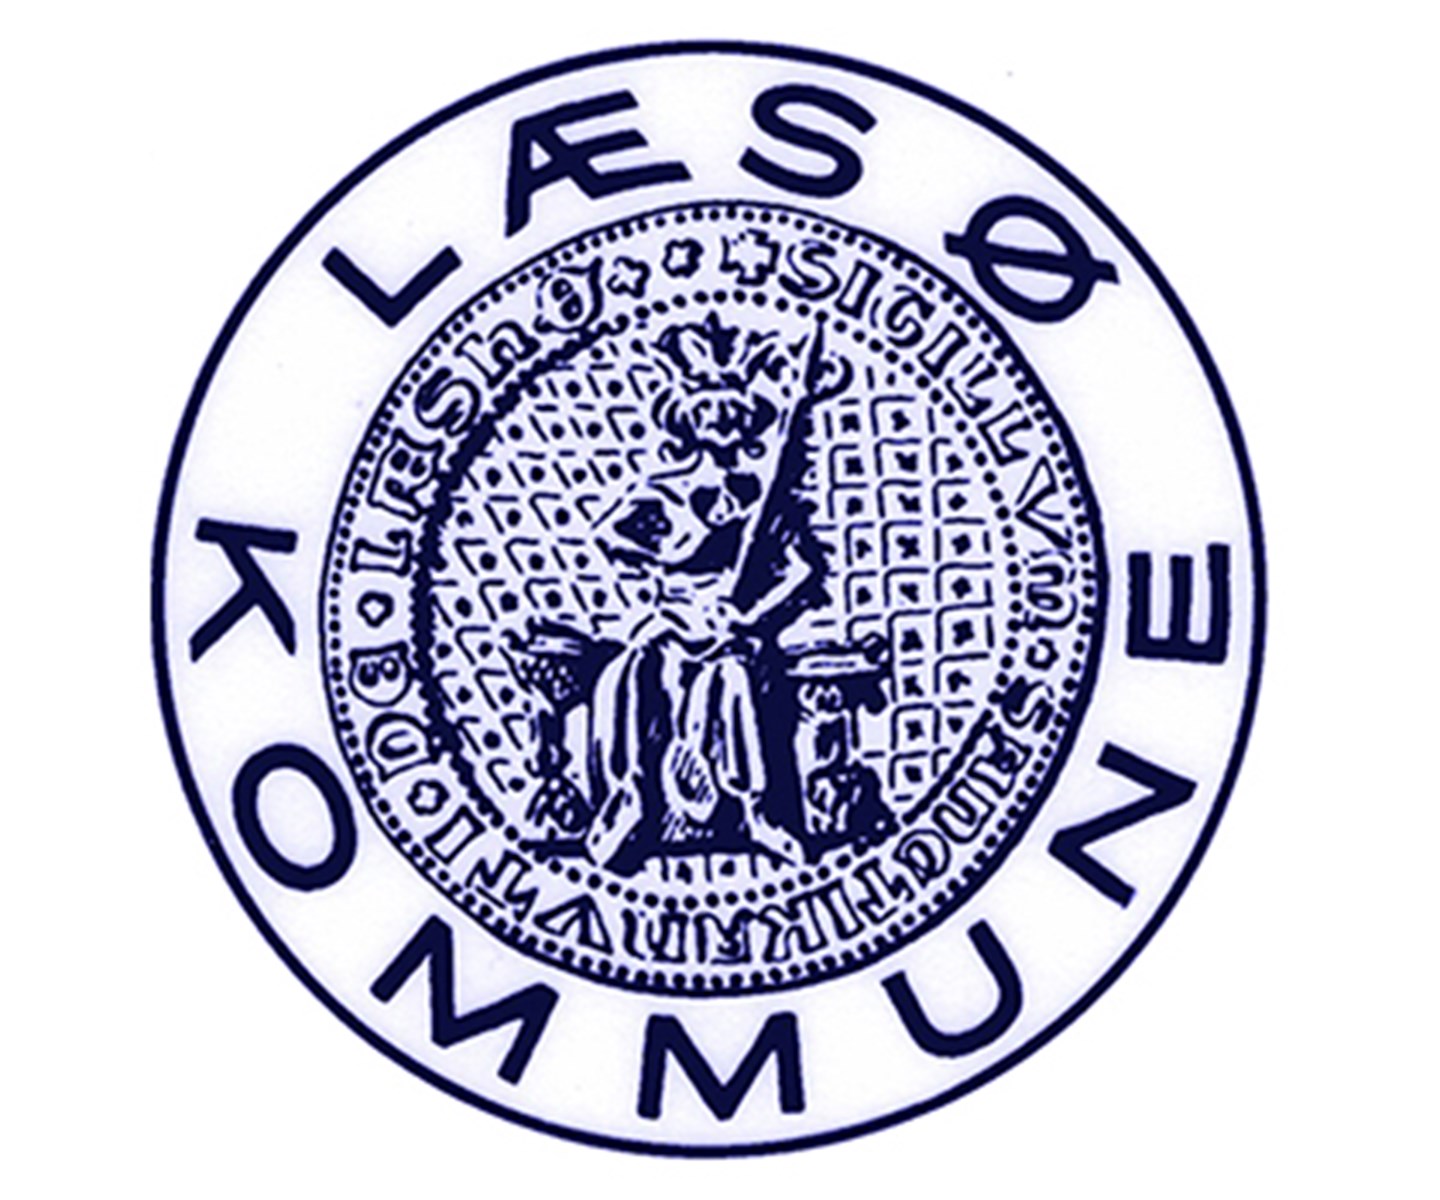 Læse Kommunes logo